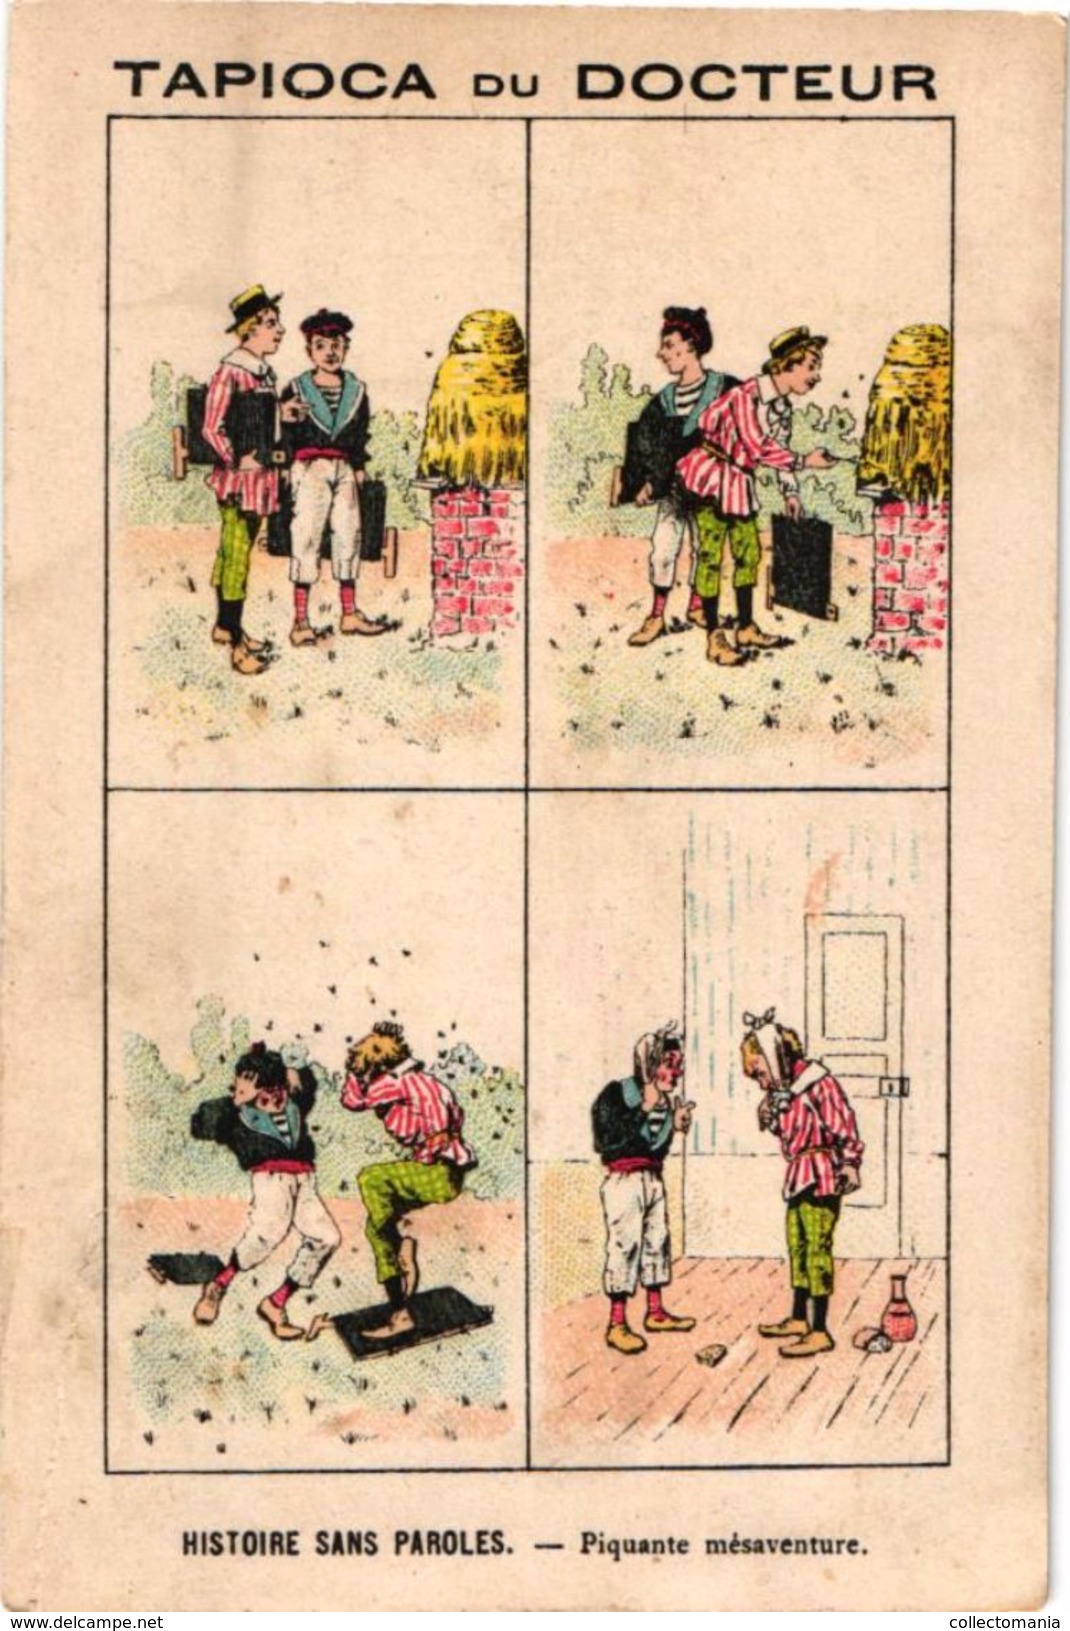 19 cartes litho chromos TRES ANCIENS c1890, comme bandes dessinés, publicitaires Tapioca; imprimeur COURBE ROUZET